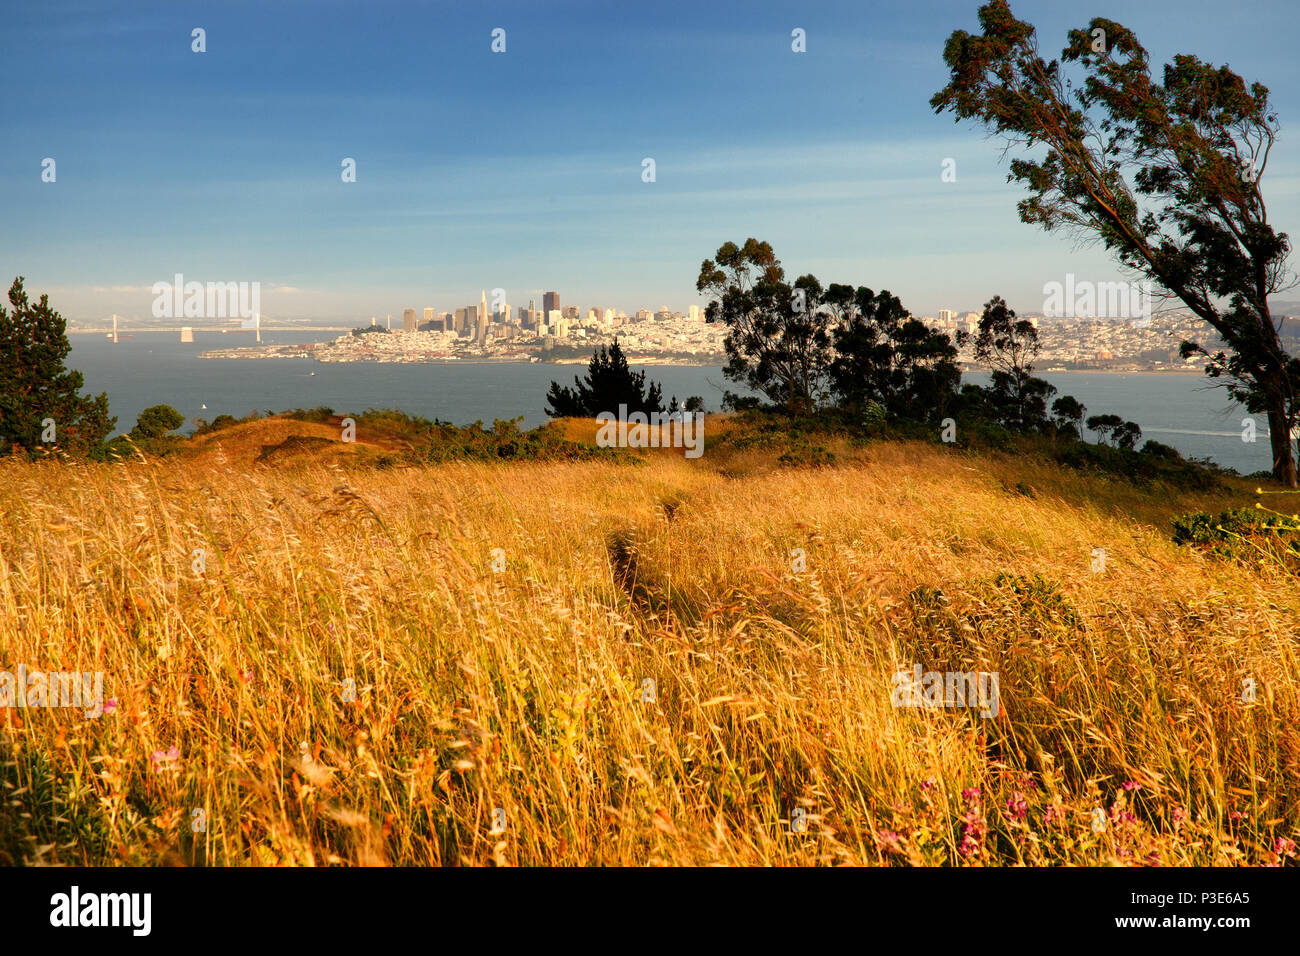 Headland of the Golden Gate National Recreation Area, The Presidio, San Francisco, California, USA Stock Photo